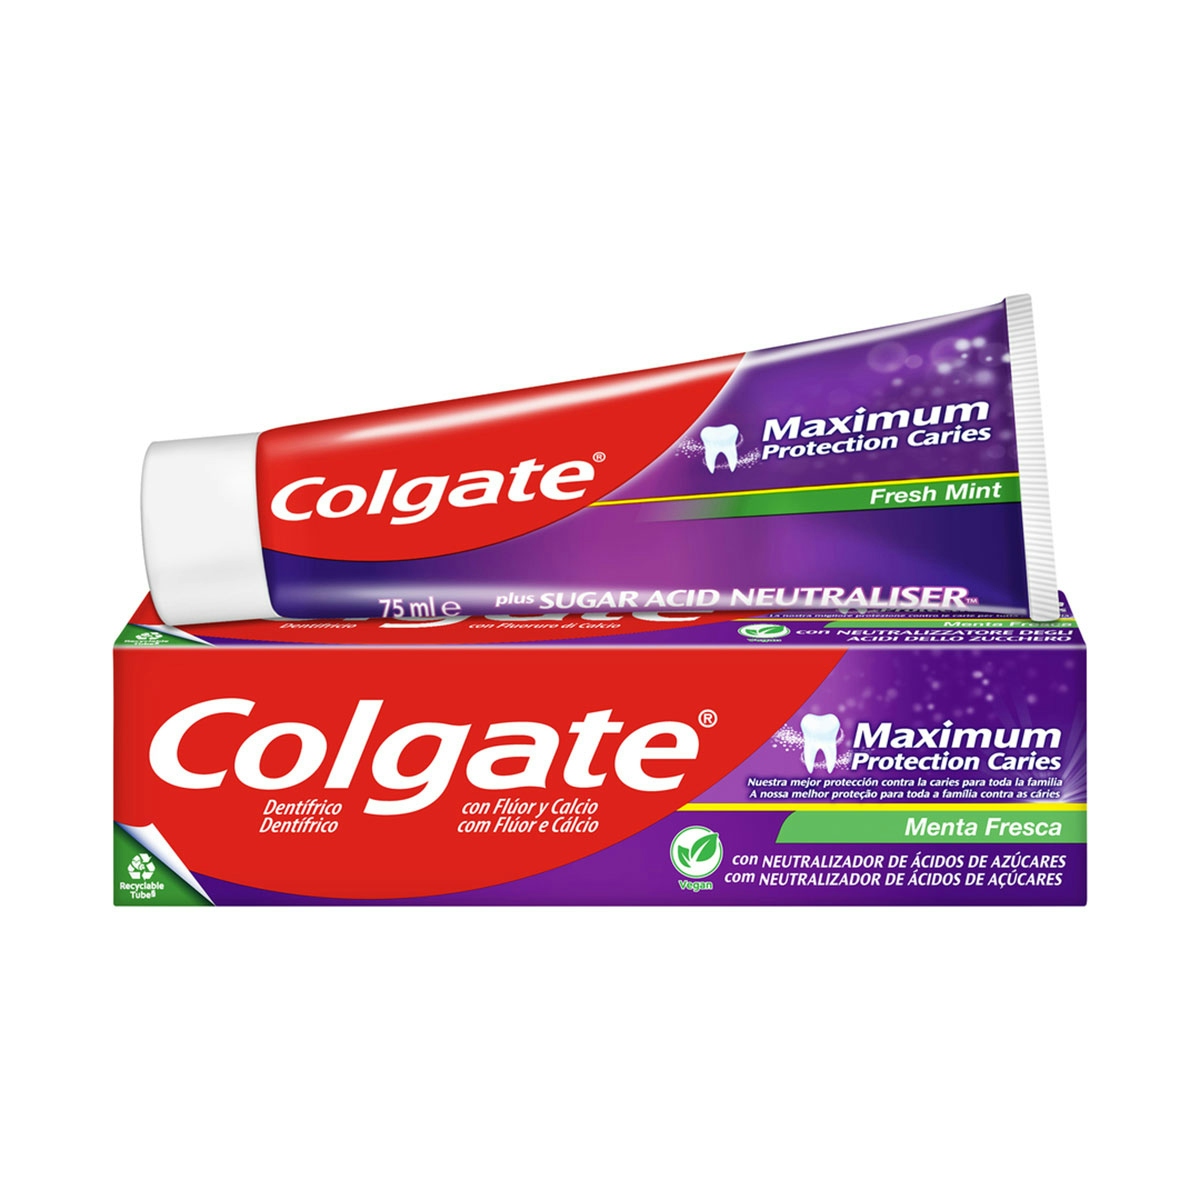 Pasta de dientes Colgate Maximum Protection Caries menta fresca 75ml